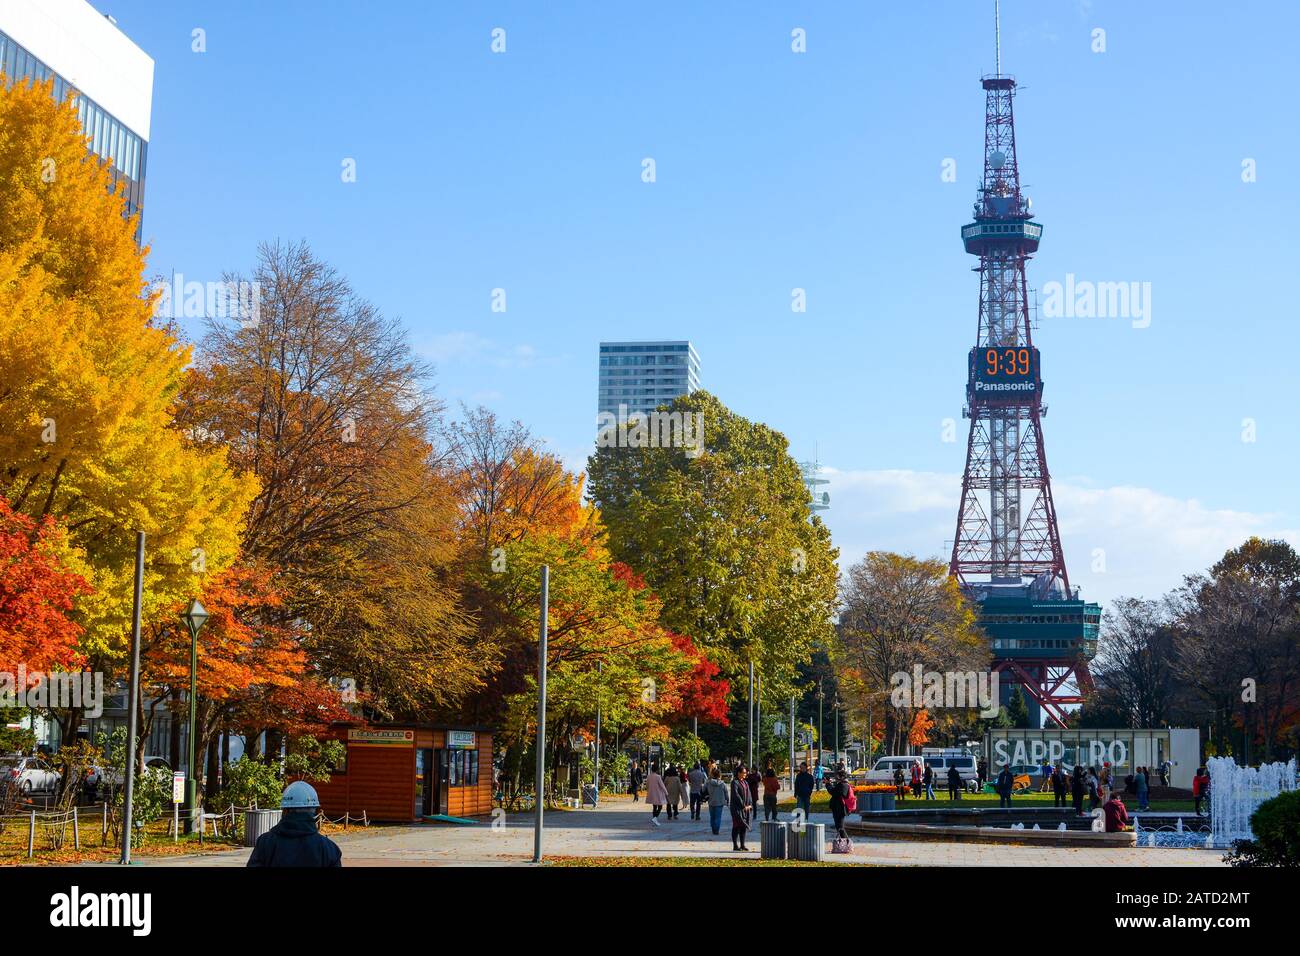 Sapporo, Giappone - 31 ottobre 2019: La folla si gode il sole in una fredda giornata autunnale di fronte alla Torre della TV di Sapporo nel Parco Oori Foto Stock